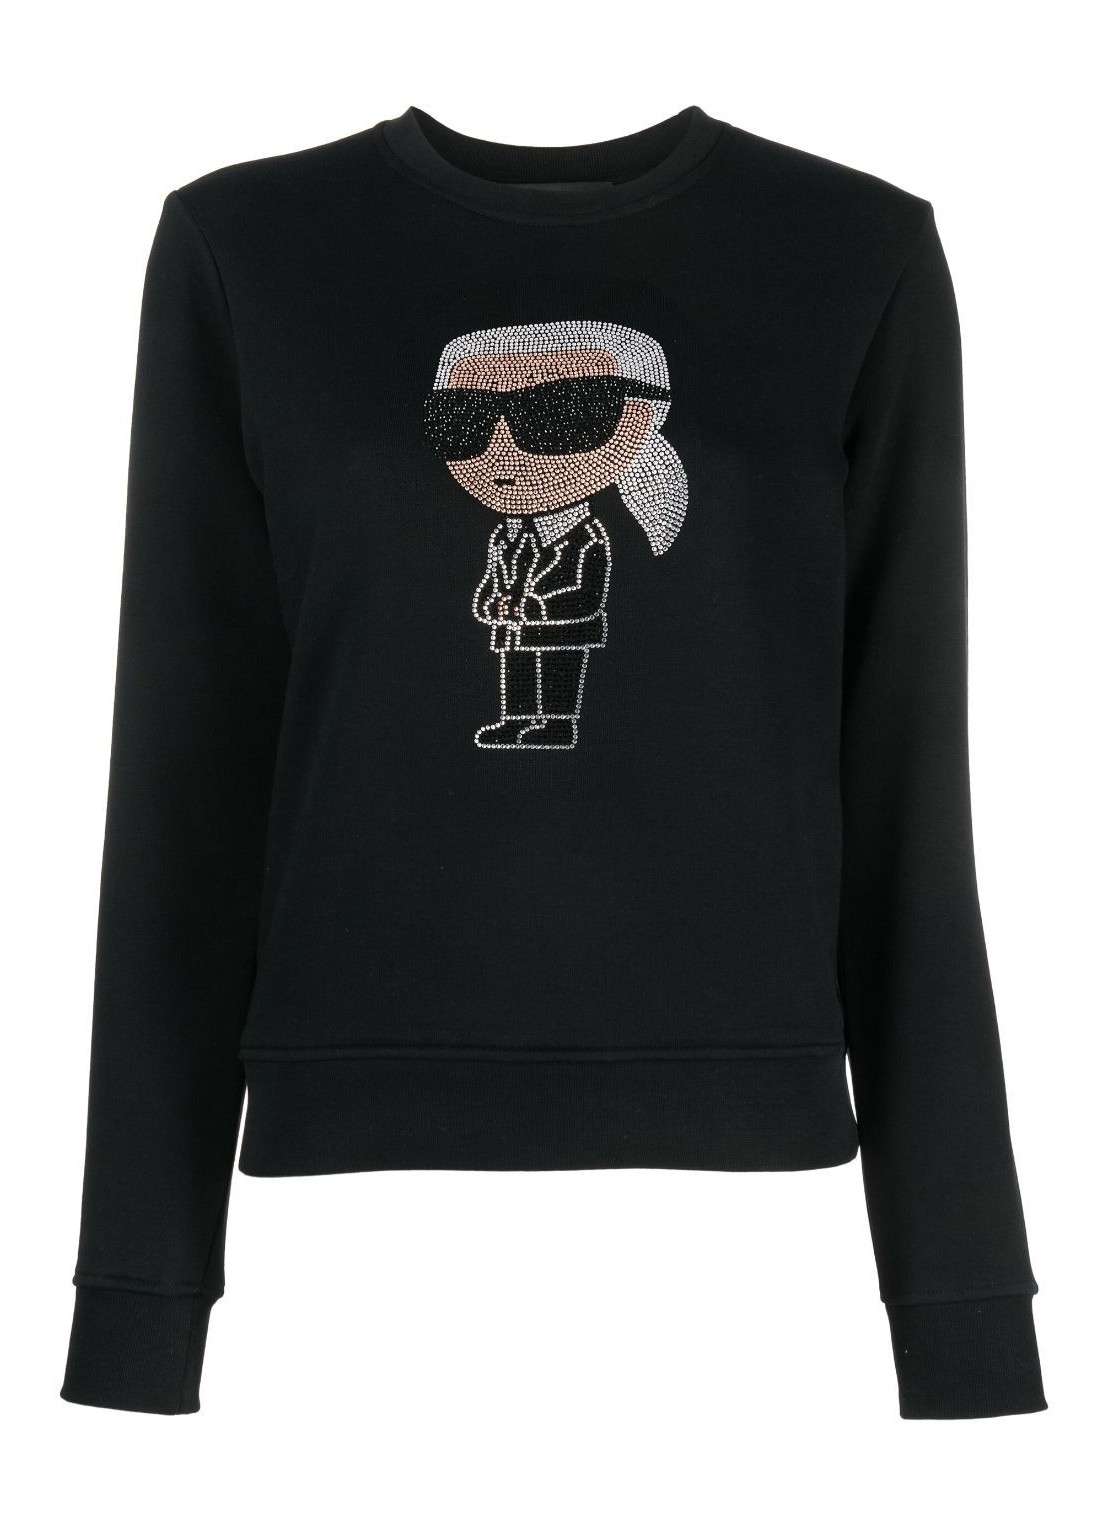 Sudadera karl lagerfeld sweater woman ikonik 2.0 karl rs sweatshirt 235w1870 999 talla S
 